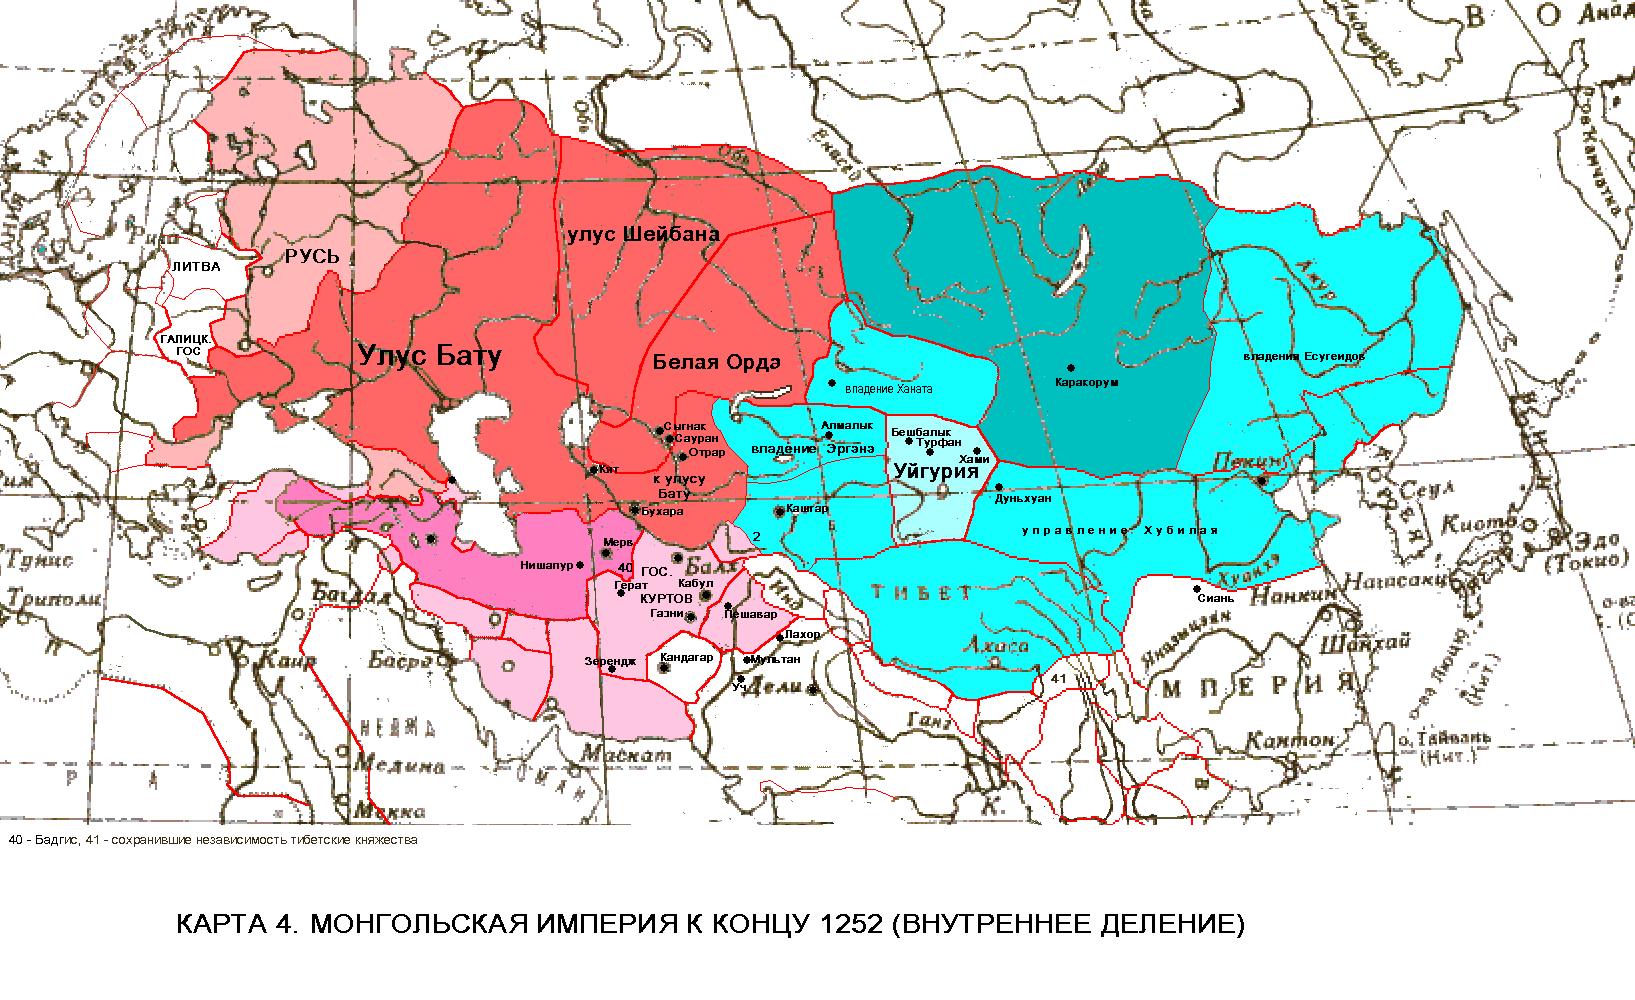 Какие народы проживали на территории орды. Распад монгольской империи карта. Золотая Орда и монгольская Империя на карте. Улусы империи Чингисхана. Распад империи Чингисхана карта.